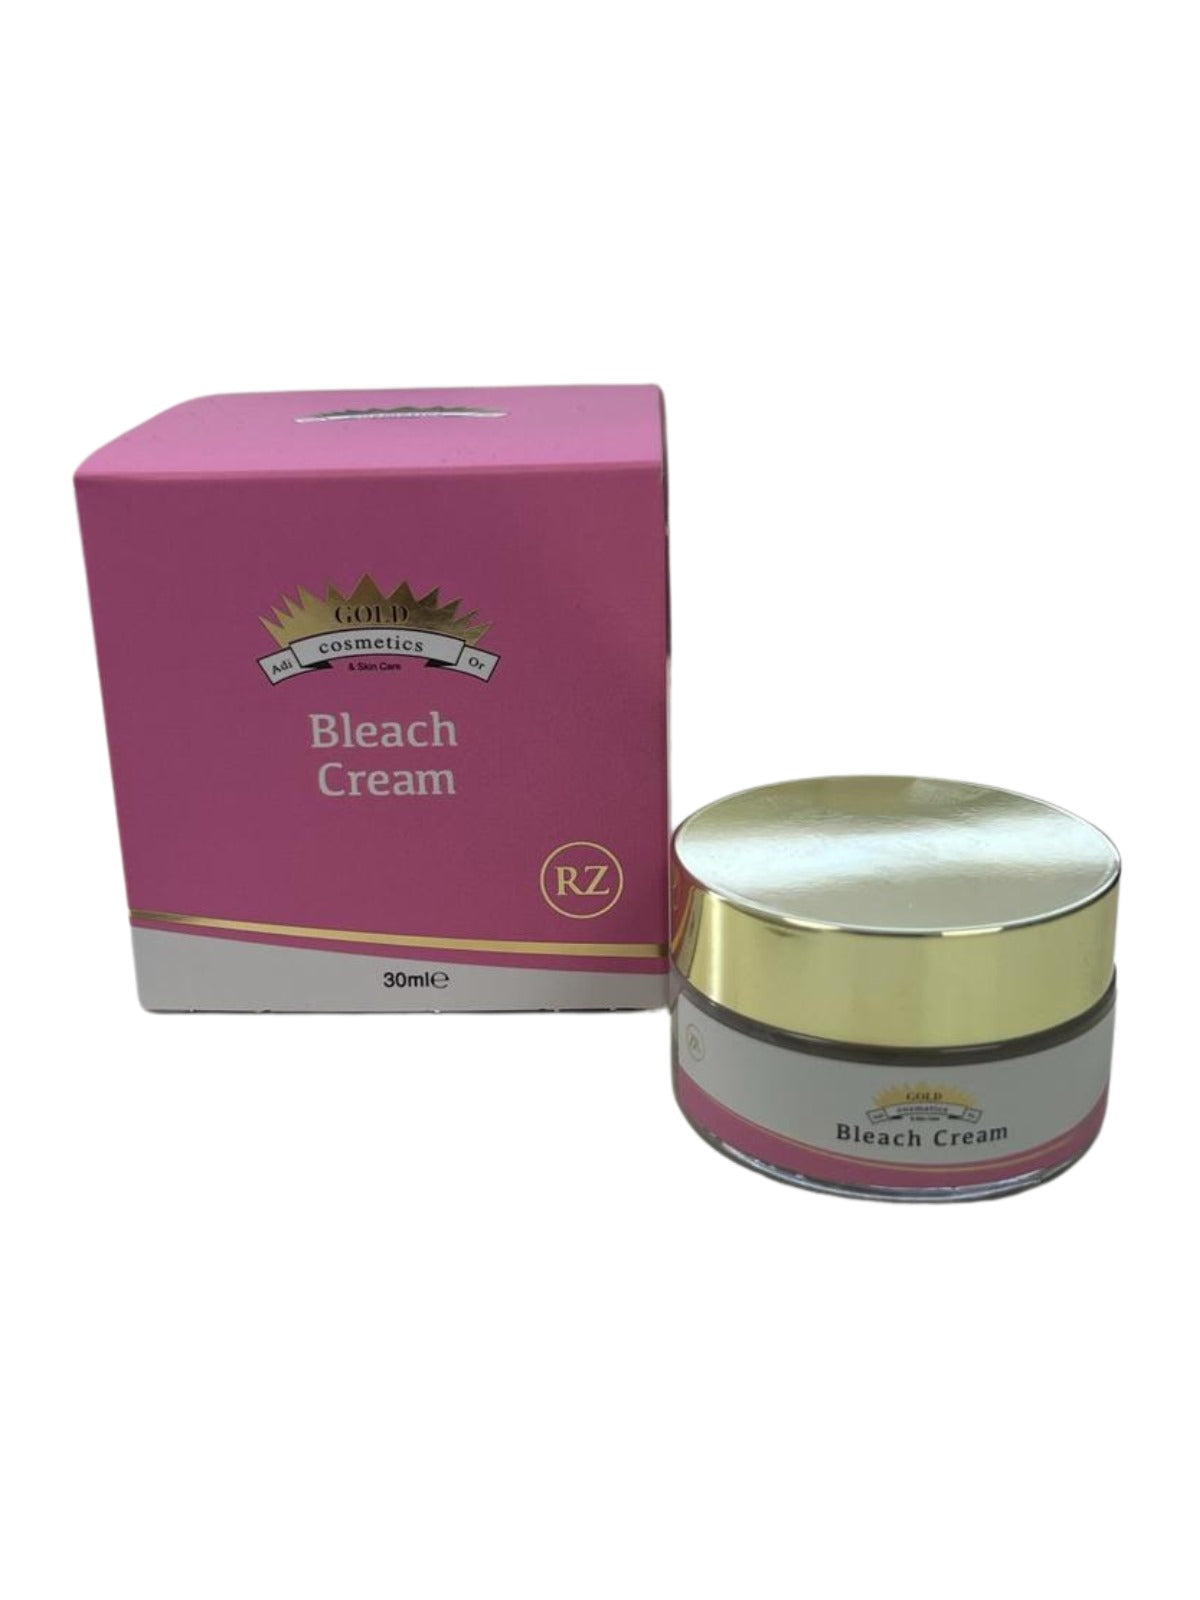 Bleach Cream - Gold Cosmetics & Skin Care